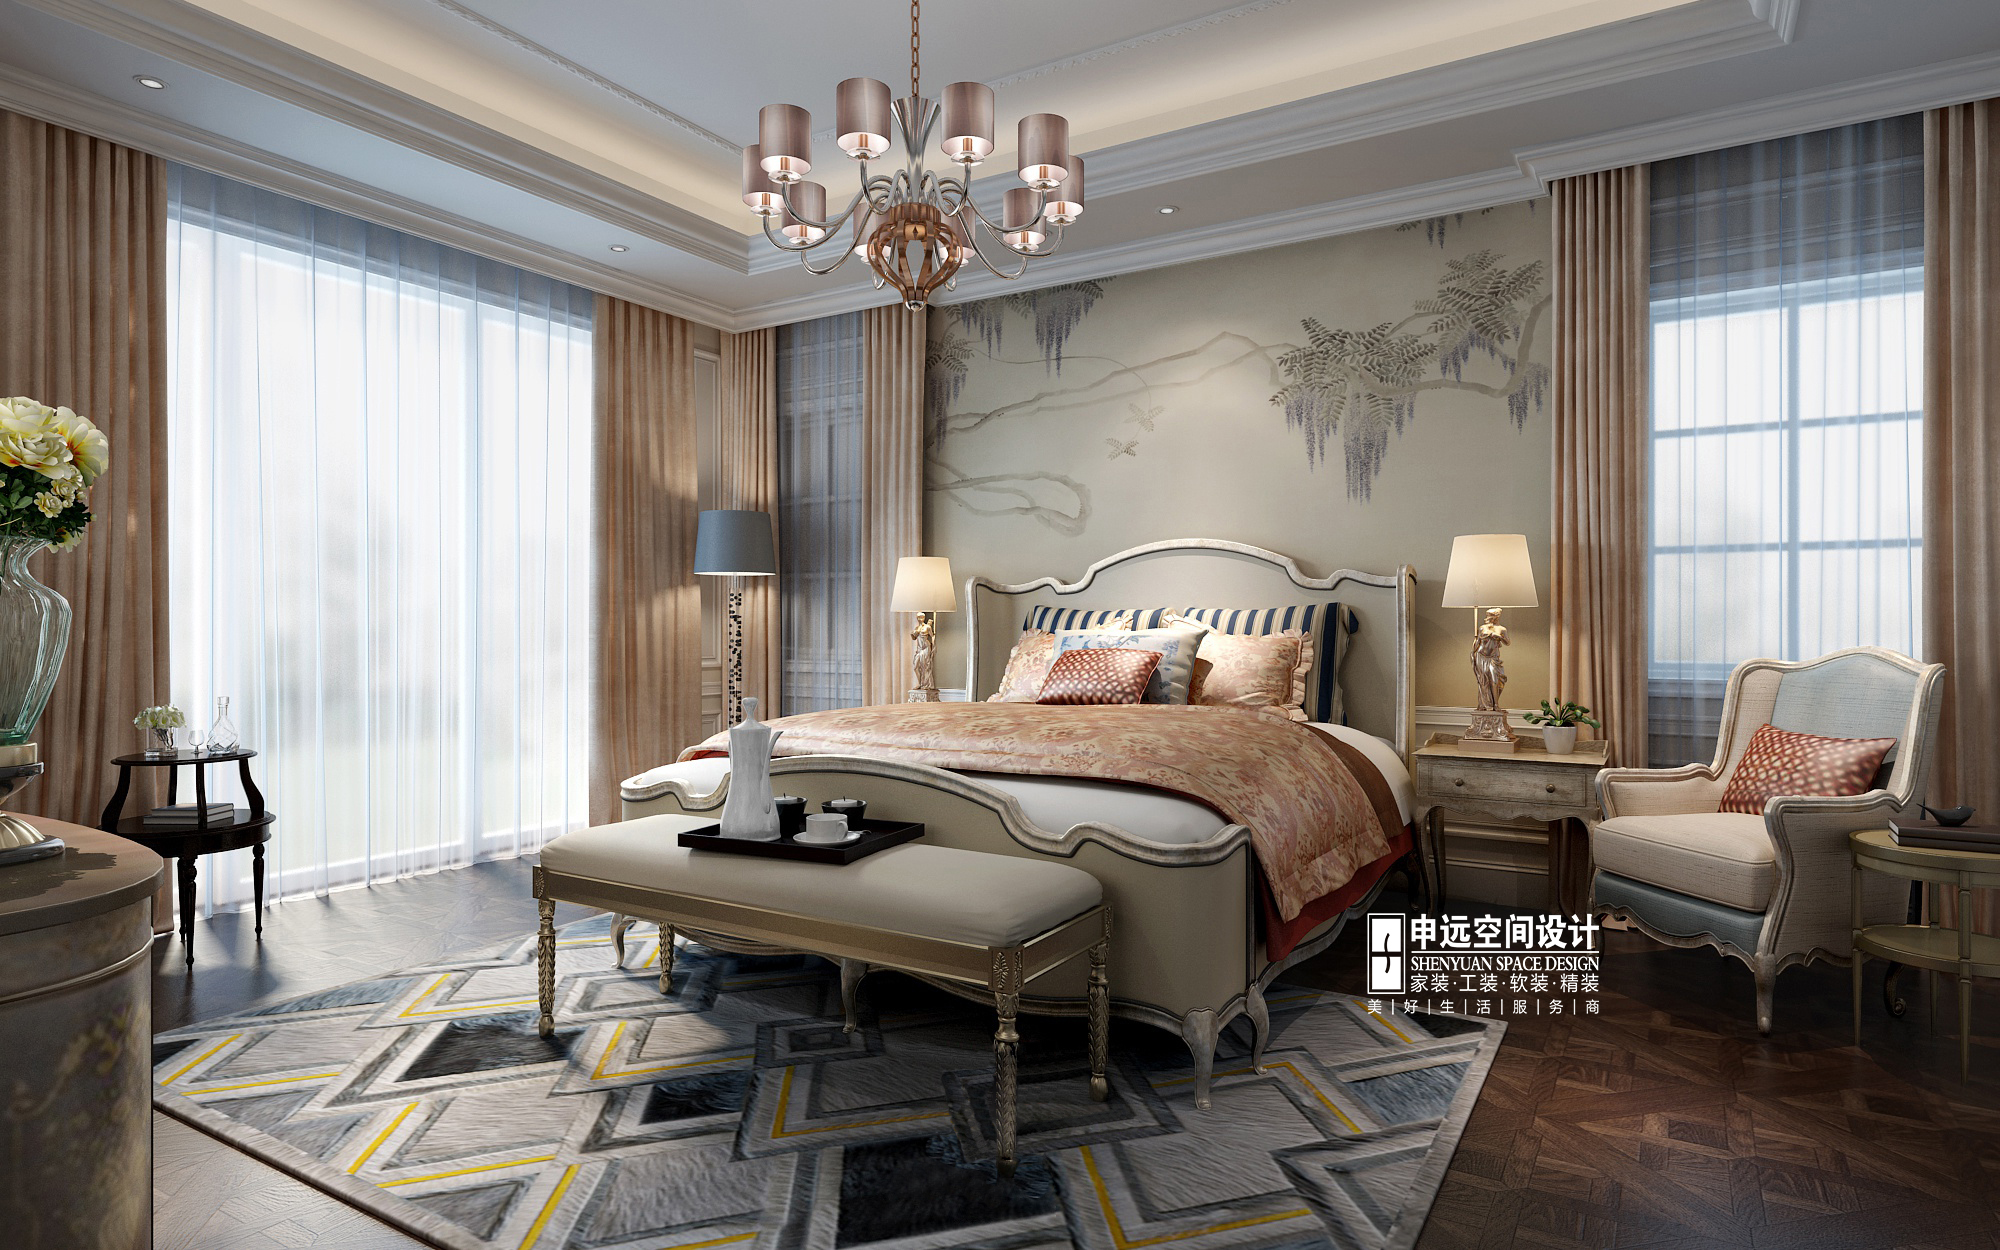 别墅 新古典 欧式 申远 别墅装修 卧室图片来自申远空间设计北京分公司在优山美地-新古典风格的分享